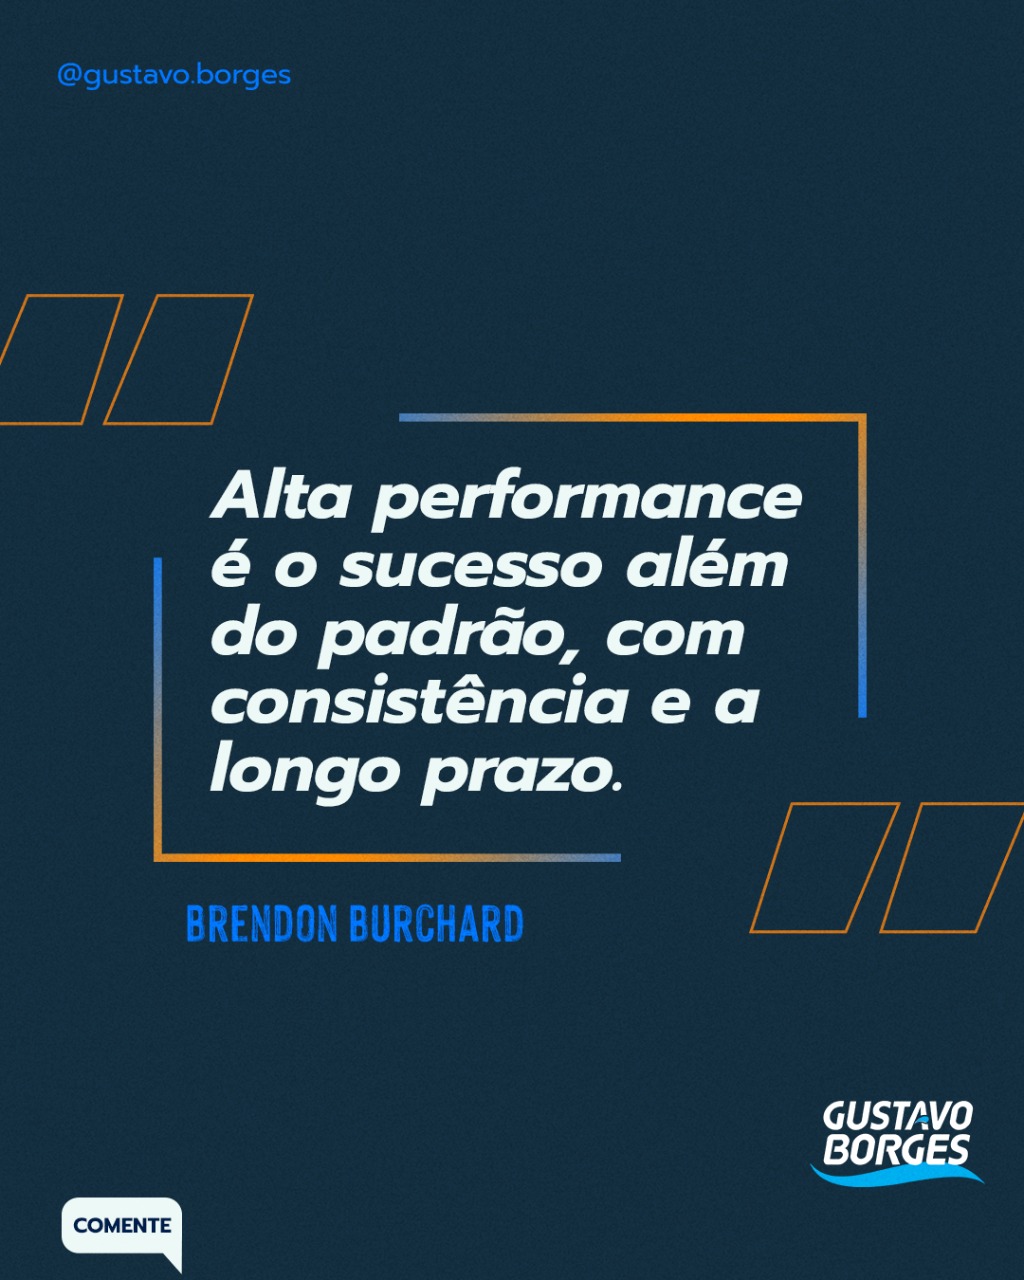 Frase de Brendon Burchard: "Alta performance é o sucesso além do padrão, com consistência e a longo prazo."